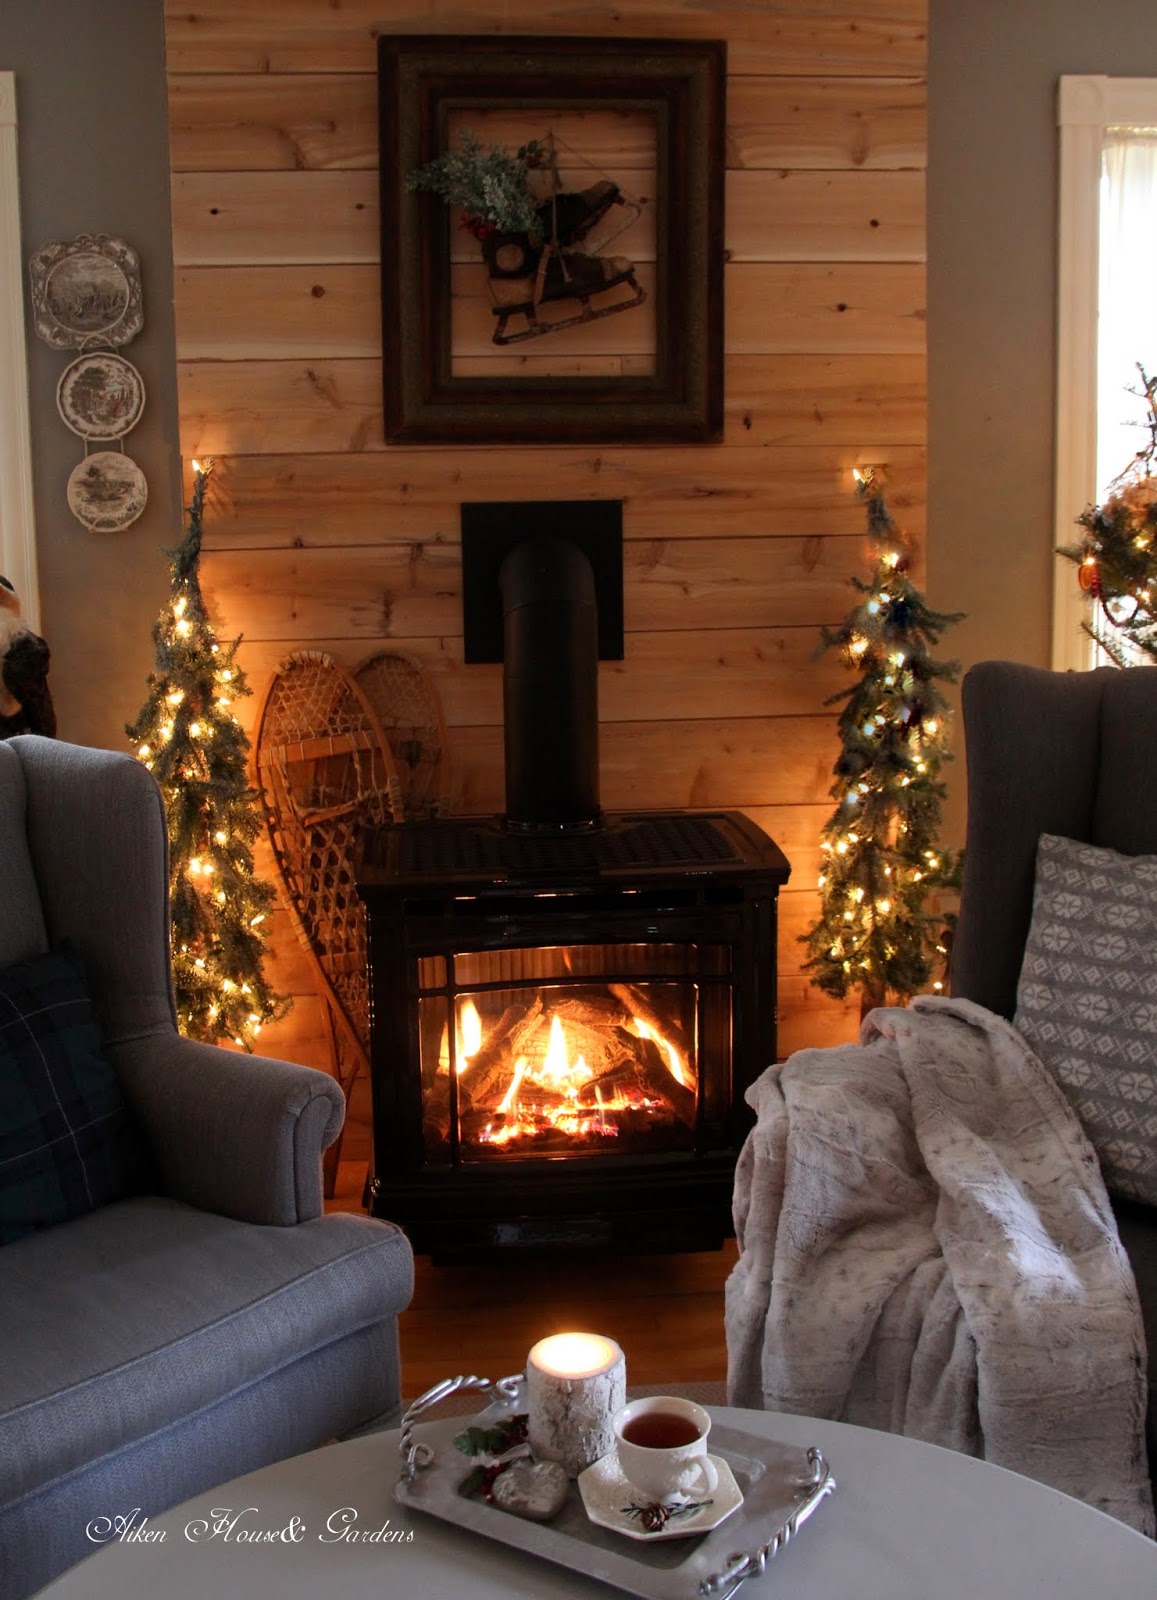 Aiken House & Gardens: Warm & Cozy Fireside Tea